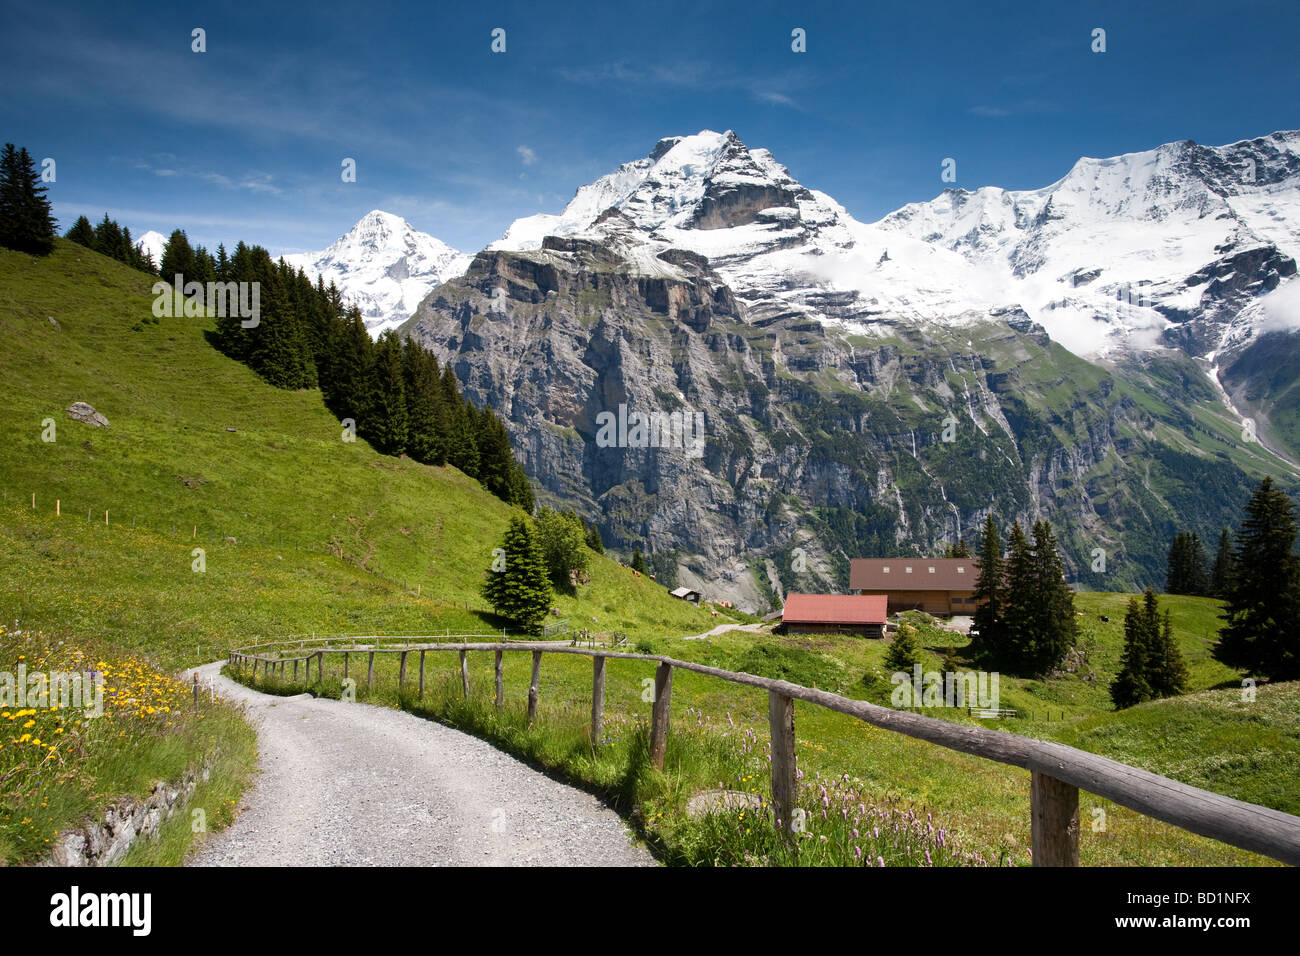 Malerische Berg Bauernhof Landschaft in den Schweizer Alpen, Mürren,  Schweiz. Wandern in den Schweizer Alpen. Dinge, die in der Schweiz zu tun  Stockfotografie - Alamy